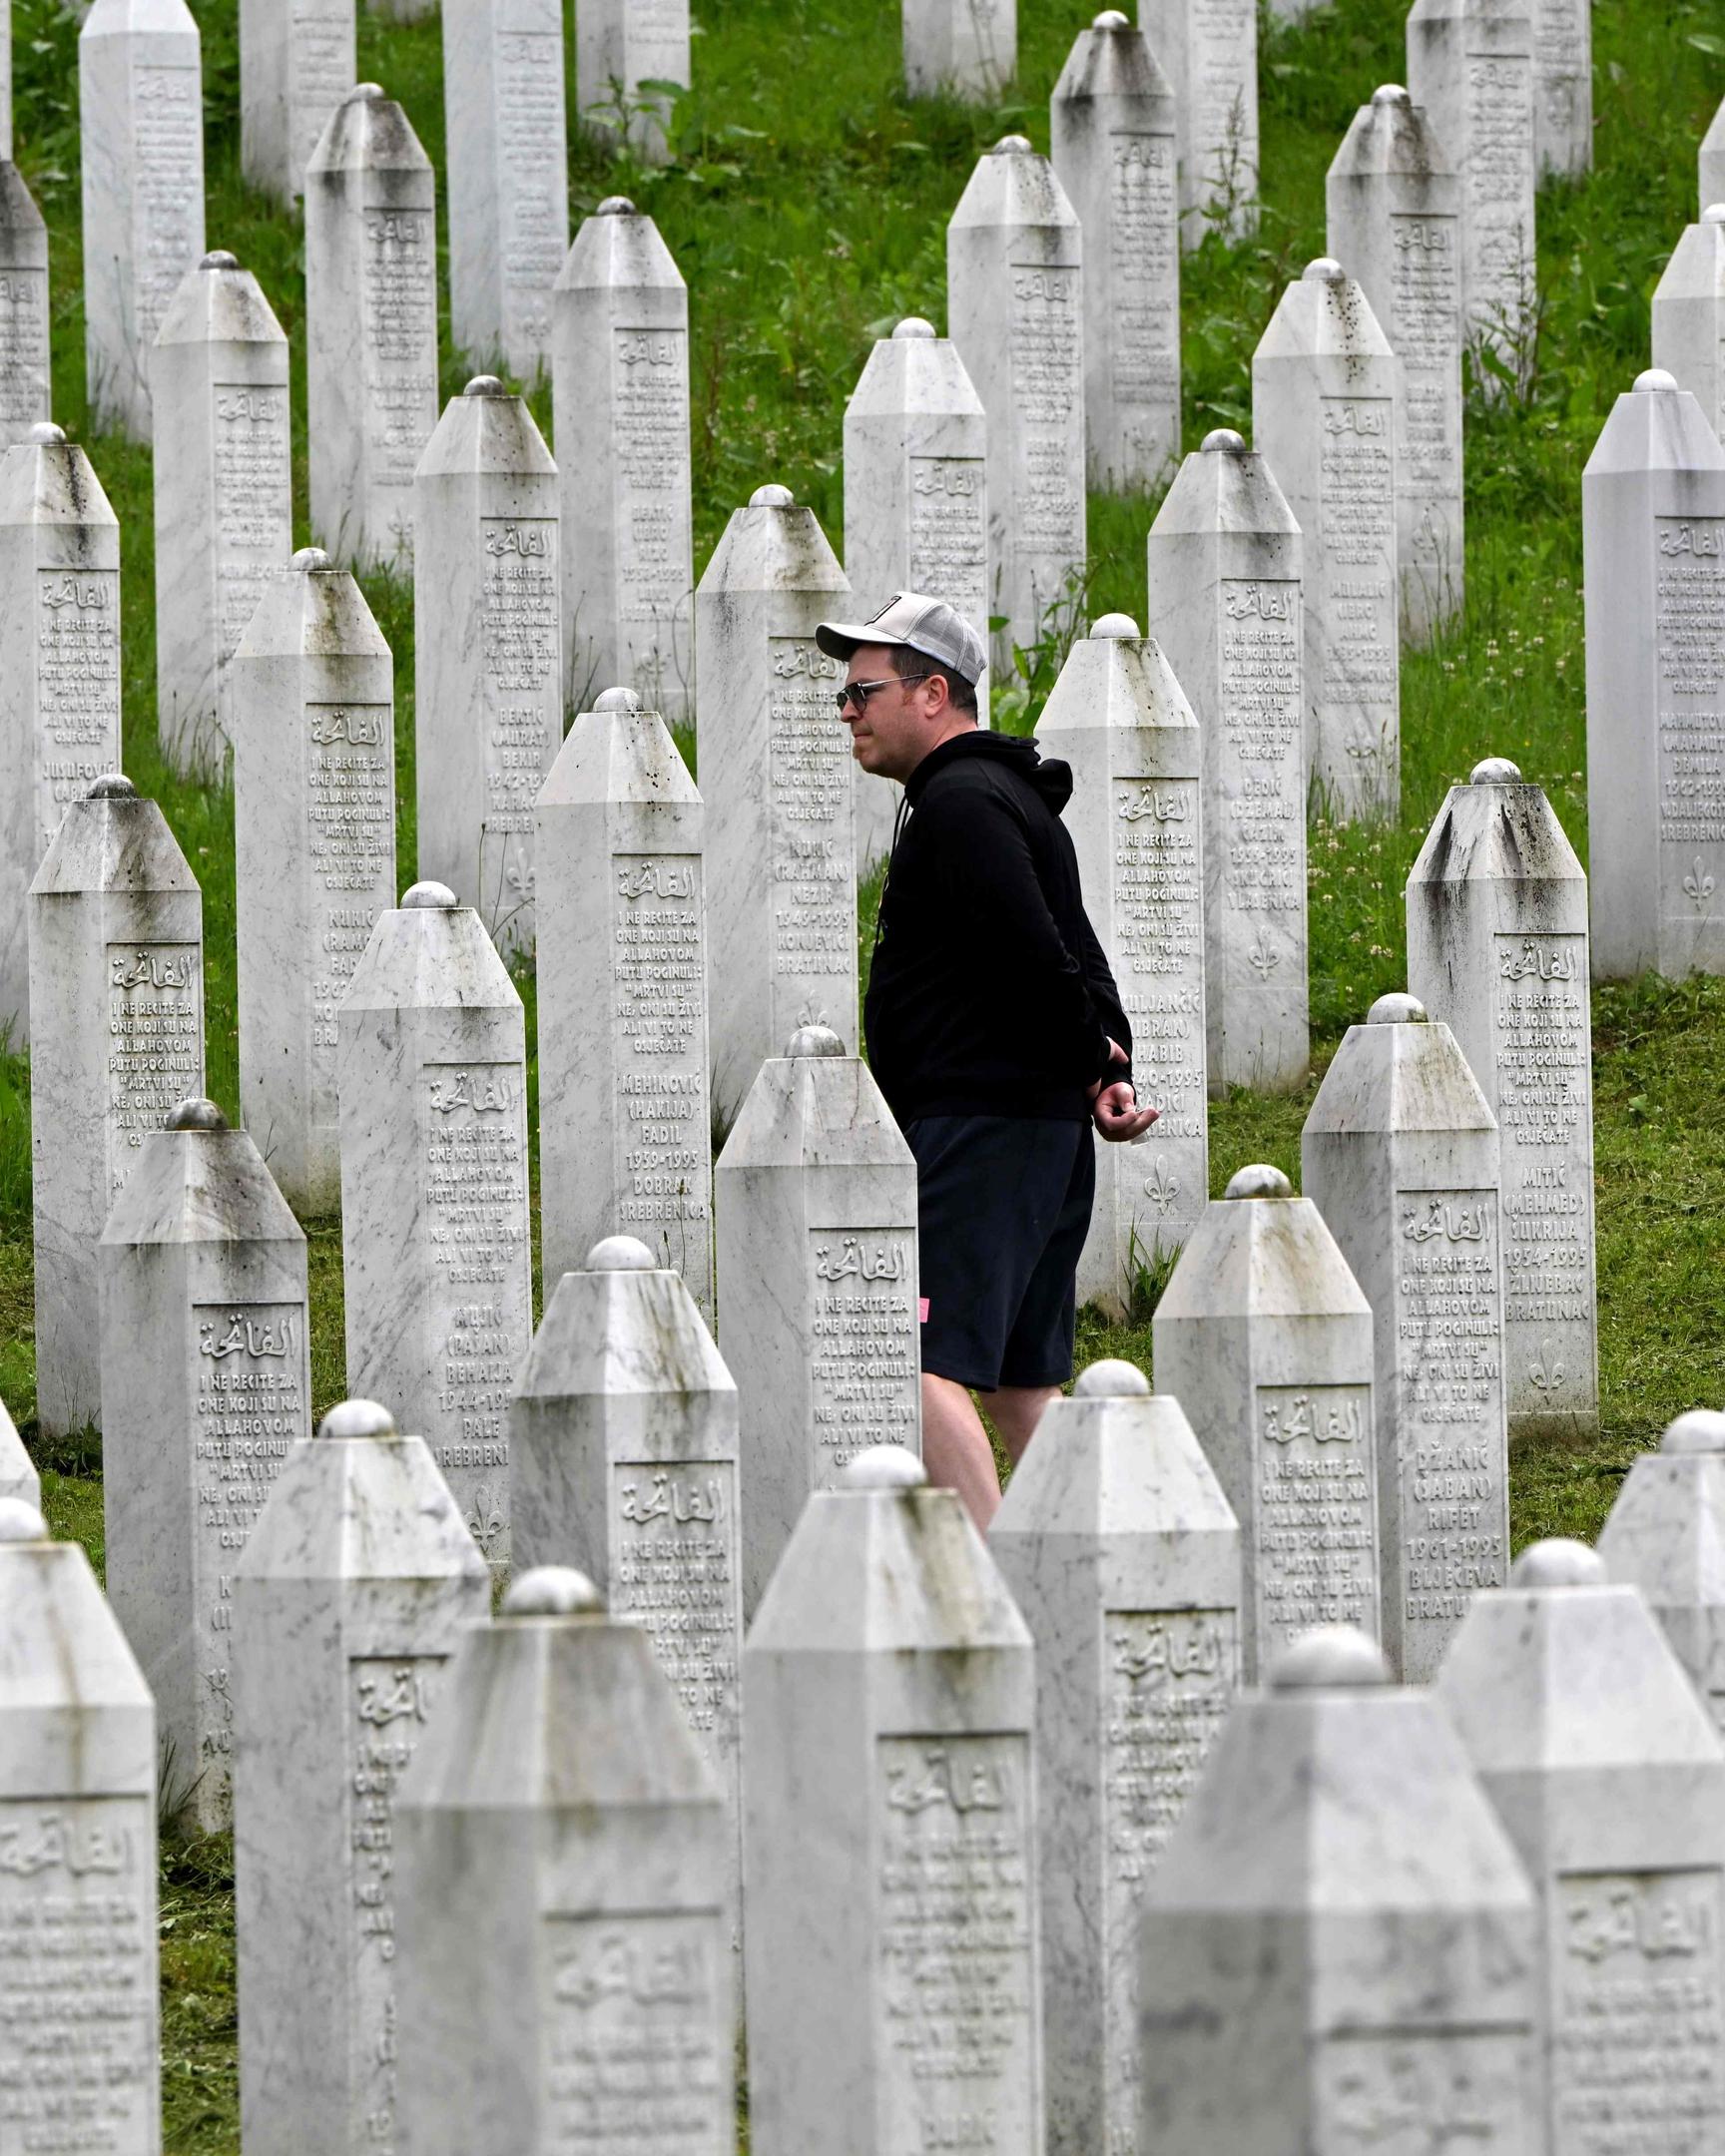 Binnen weniger Tage hatte die Armee der Republika Srpska 1995 bei der Stadt Srebrenica mehr als 8.000 muslimische Bosniaken ermordet.